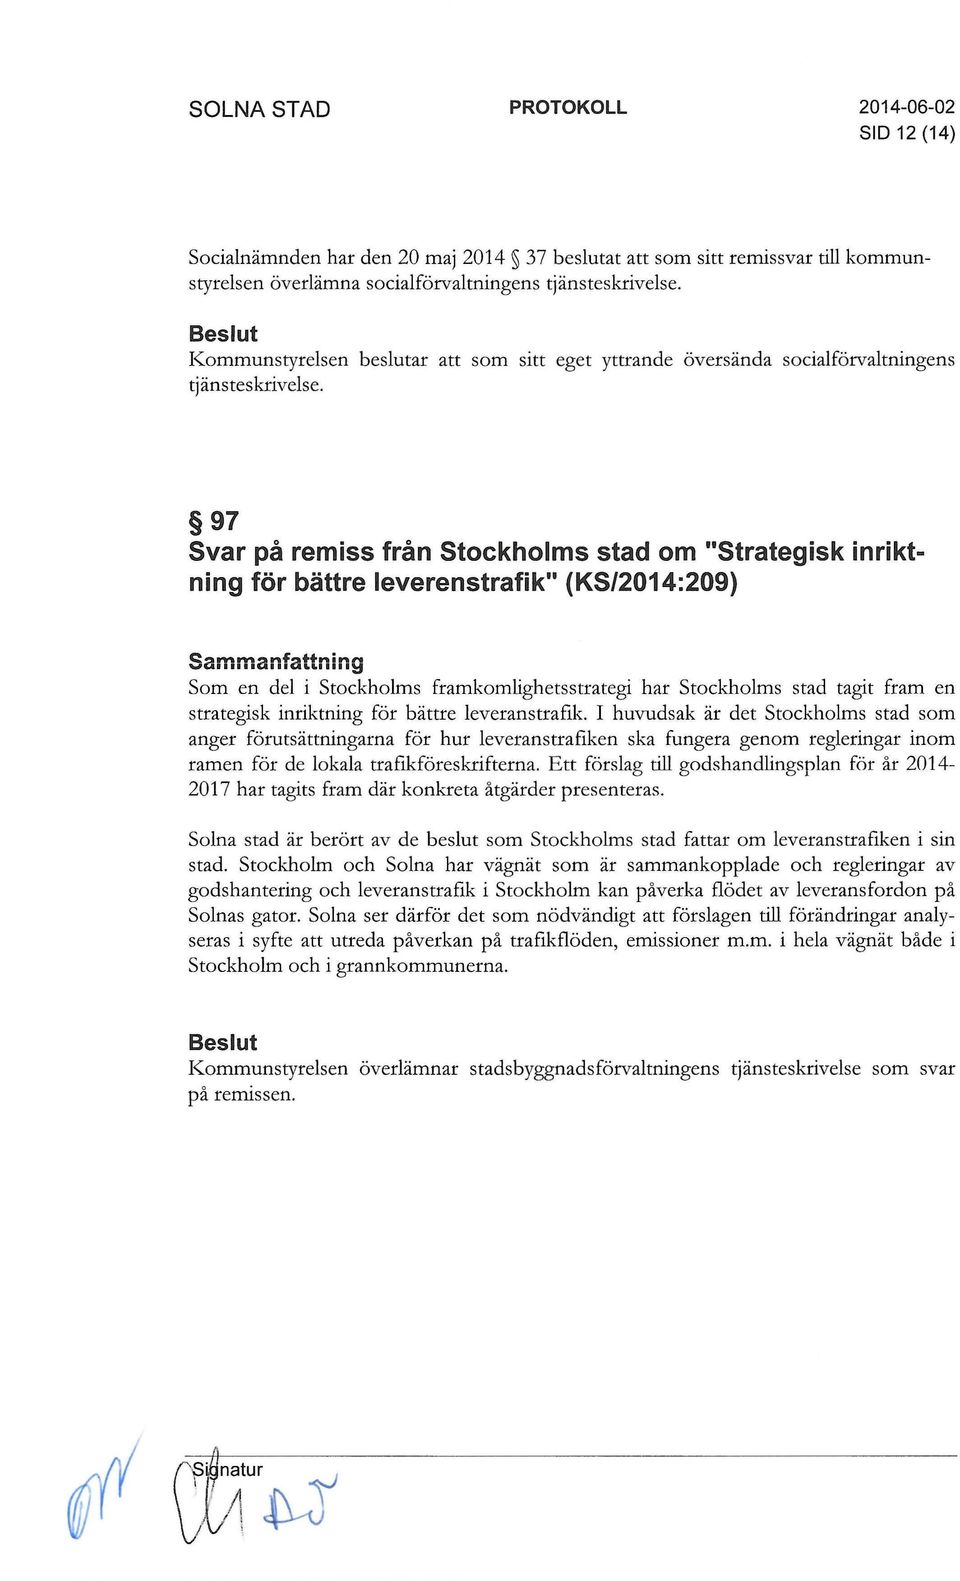 97 Svar på remiss från Stockholms stad om "Strategisk inriktning för bättre leverenstrafik" (KS/2014:209) ~ f tt.